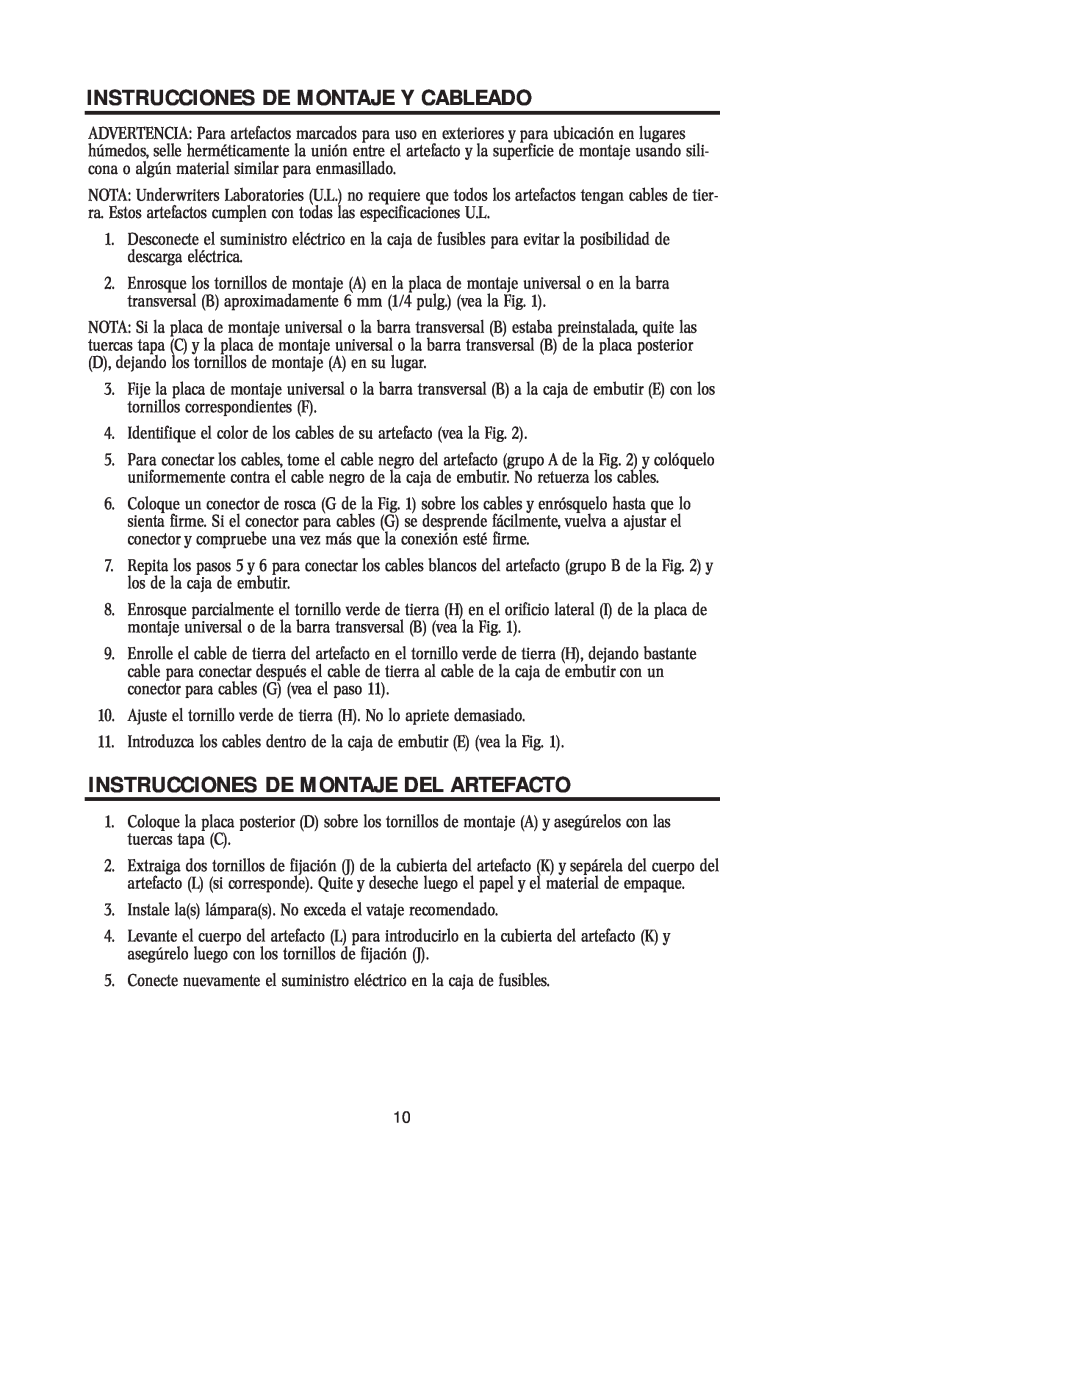 Westinghouse W-230 owner manual Instrucciones De Montaje Y Cableado, Instrucciones De Montaje Del Artefacto 